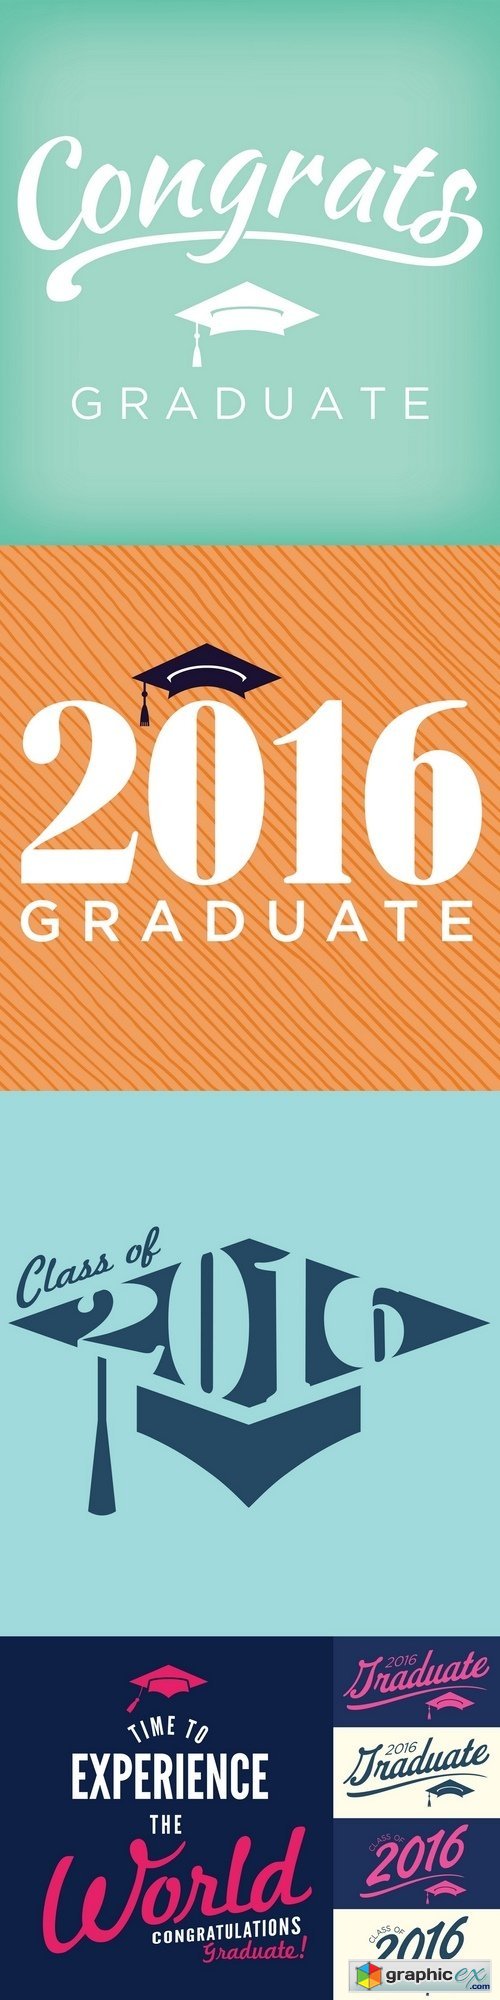 2016 Congrats or Congratulations Graduate